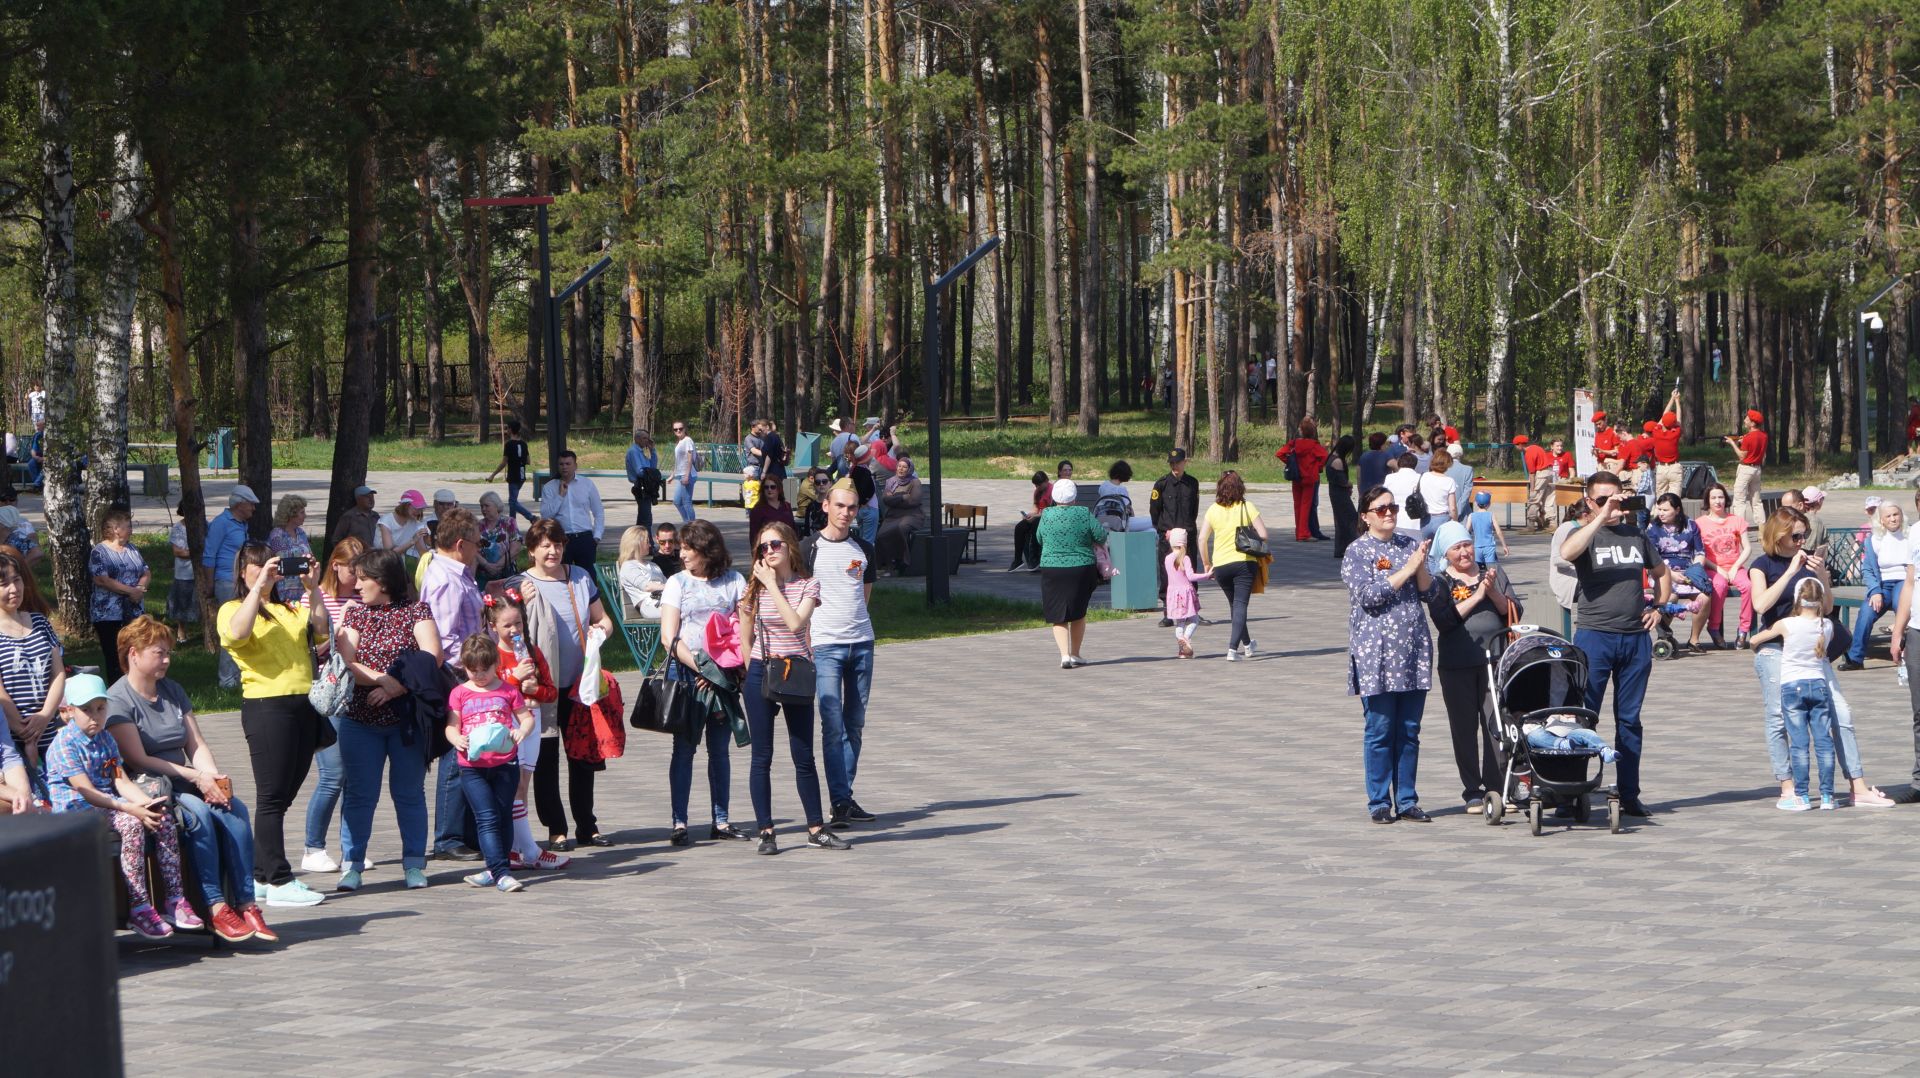 Праздничные гуляния в честь Дня Победы проходят в Гуляй парке Елабуги